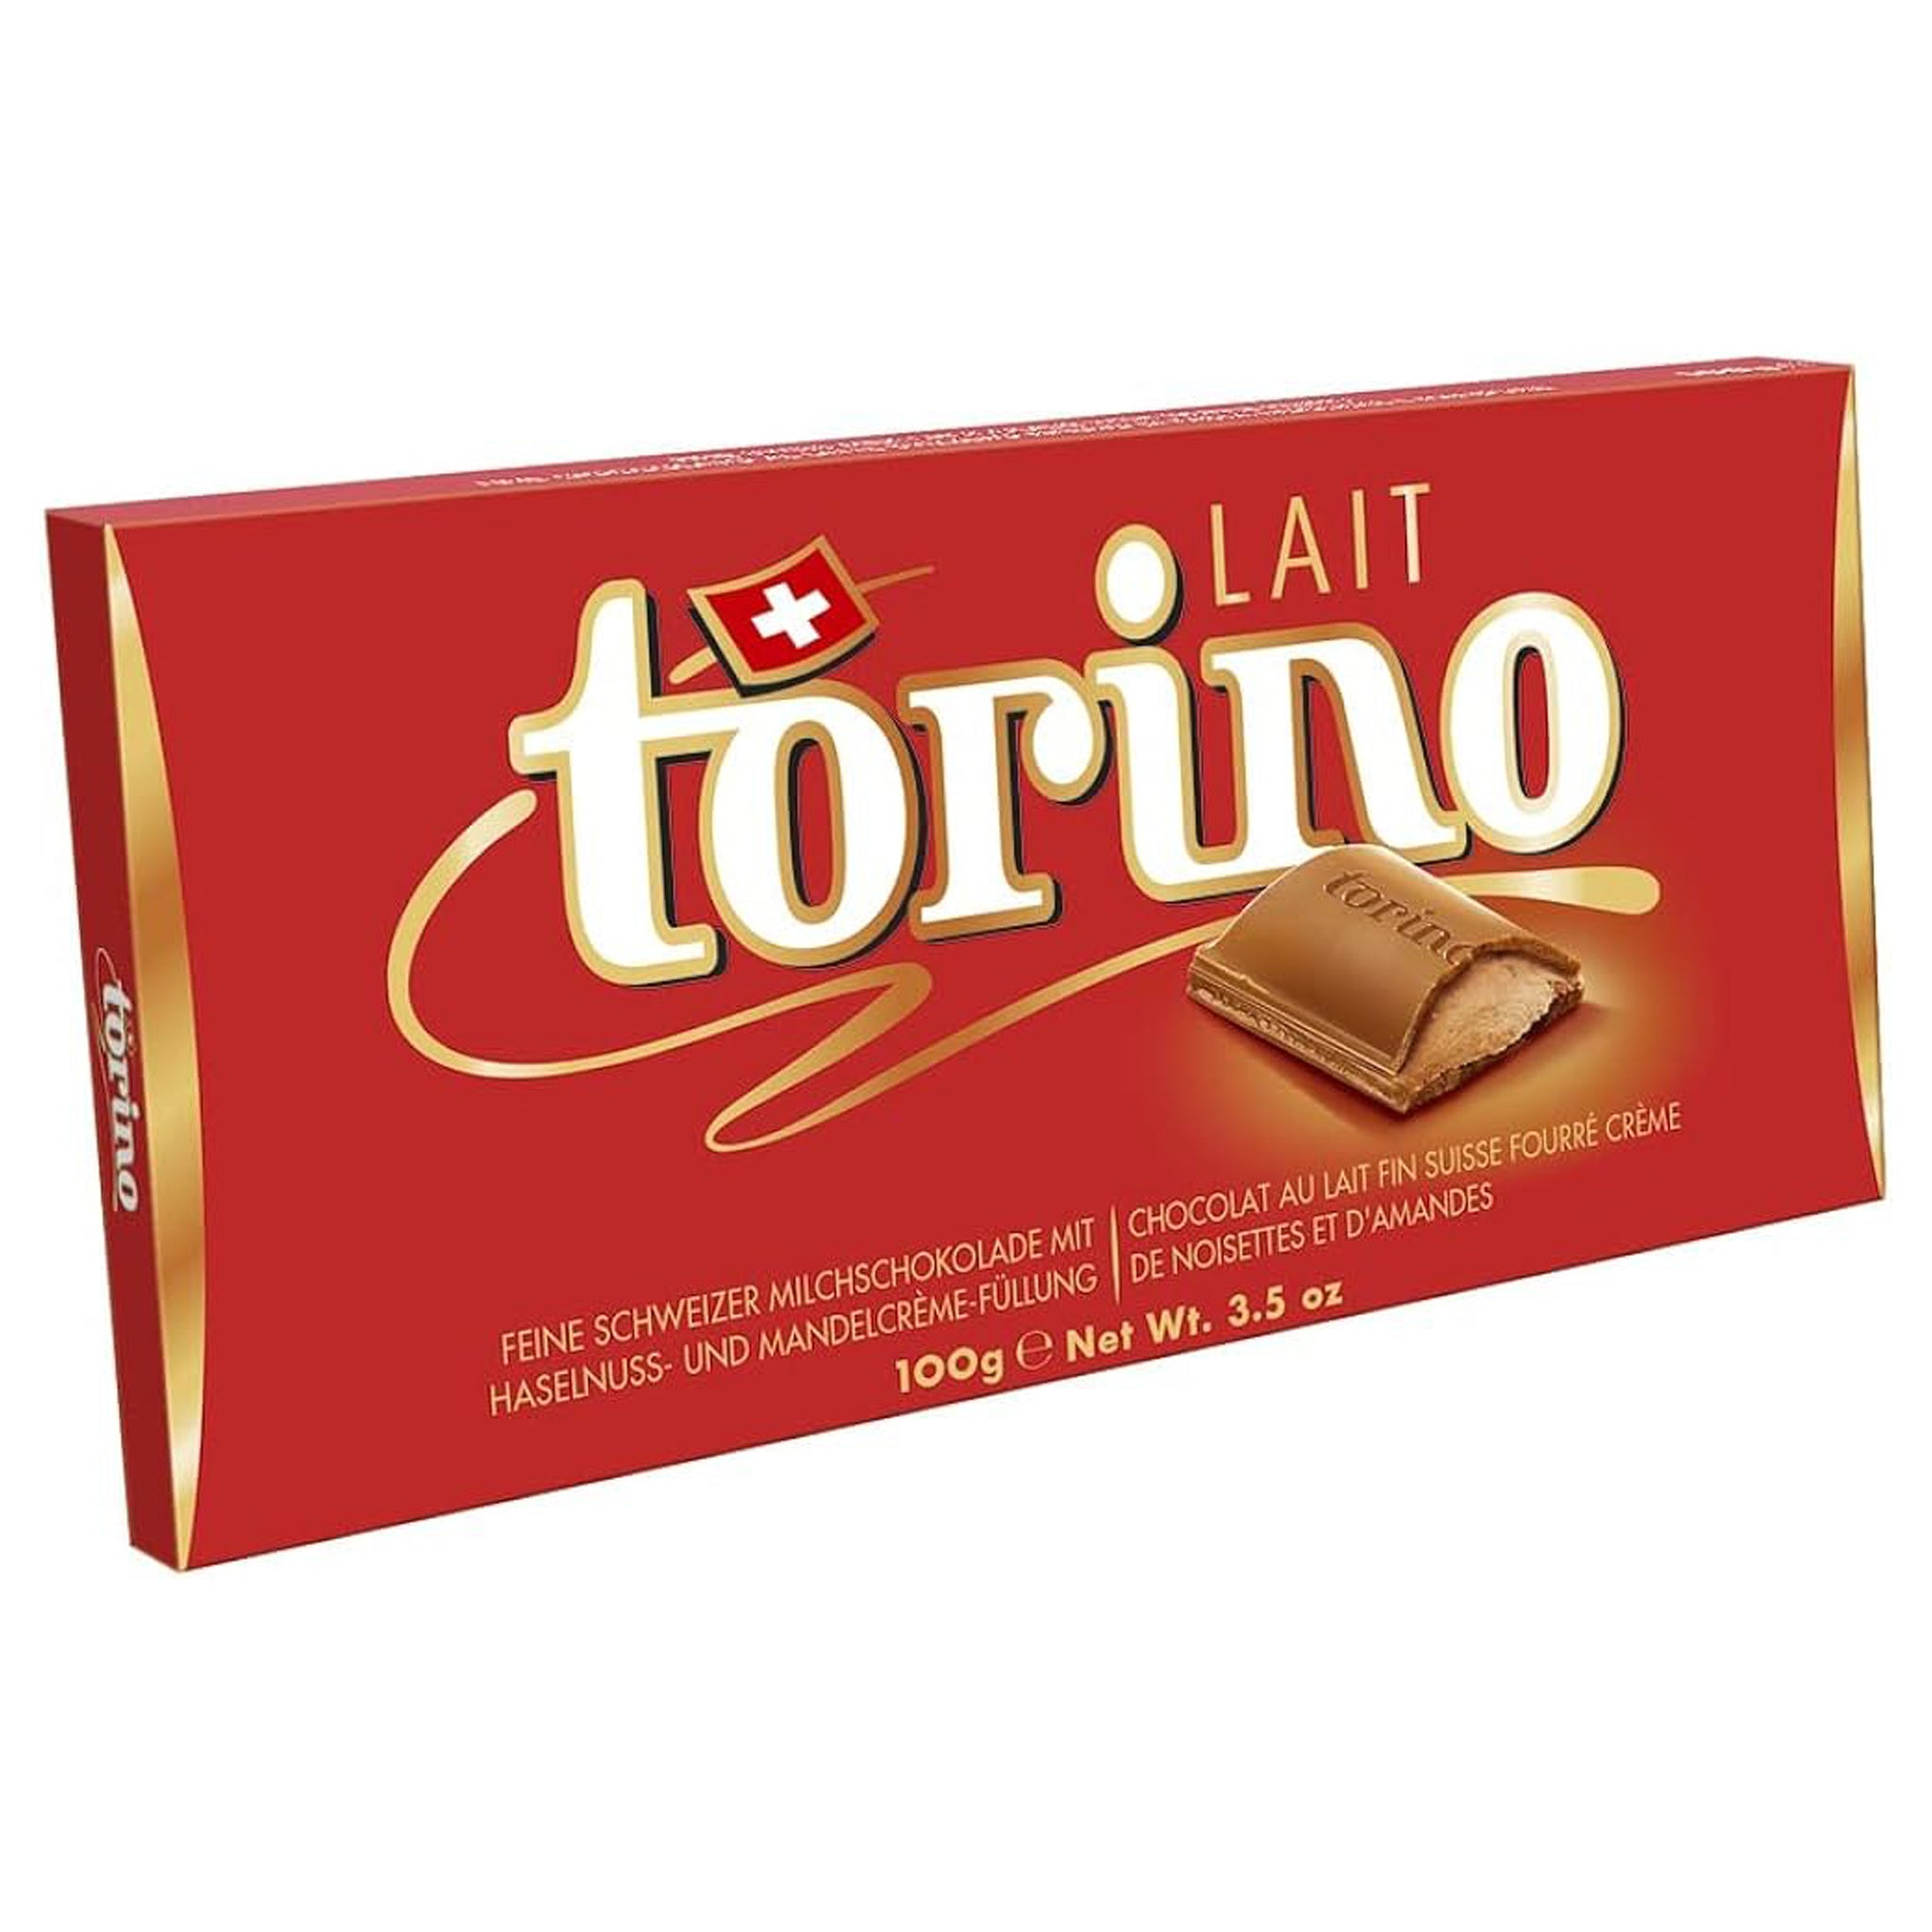 Torino Lait שוקולד חלב שוויצרי טורינו